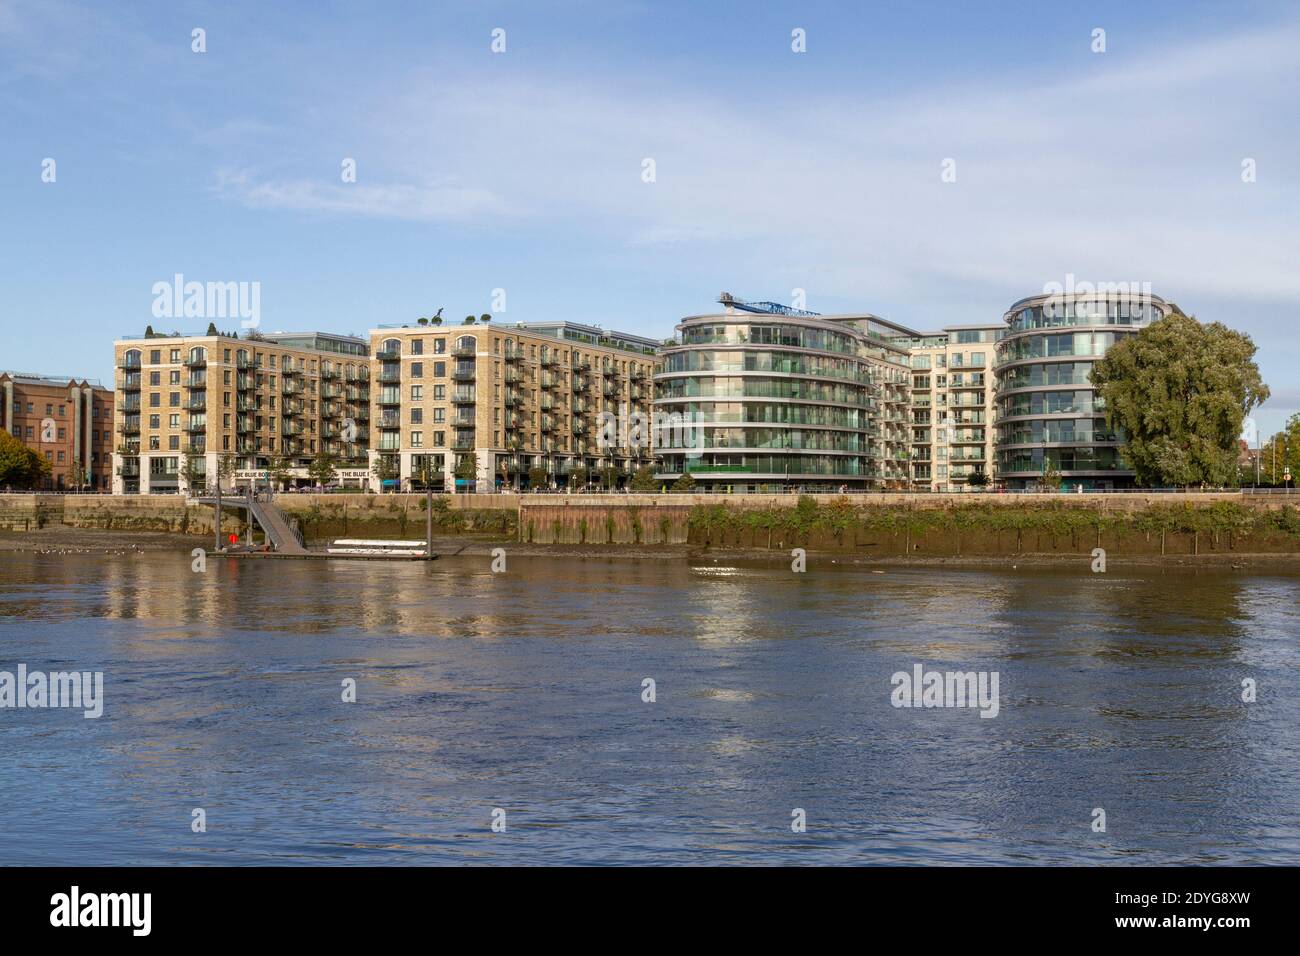 Vea al otro lado del río Támesis hacia los modernos desarrollos residenciales (Distillery Wharf & Goldhurst House) en Fulham Reach, West London, Reino Unido. Foto de stock